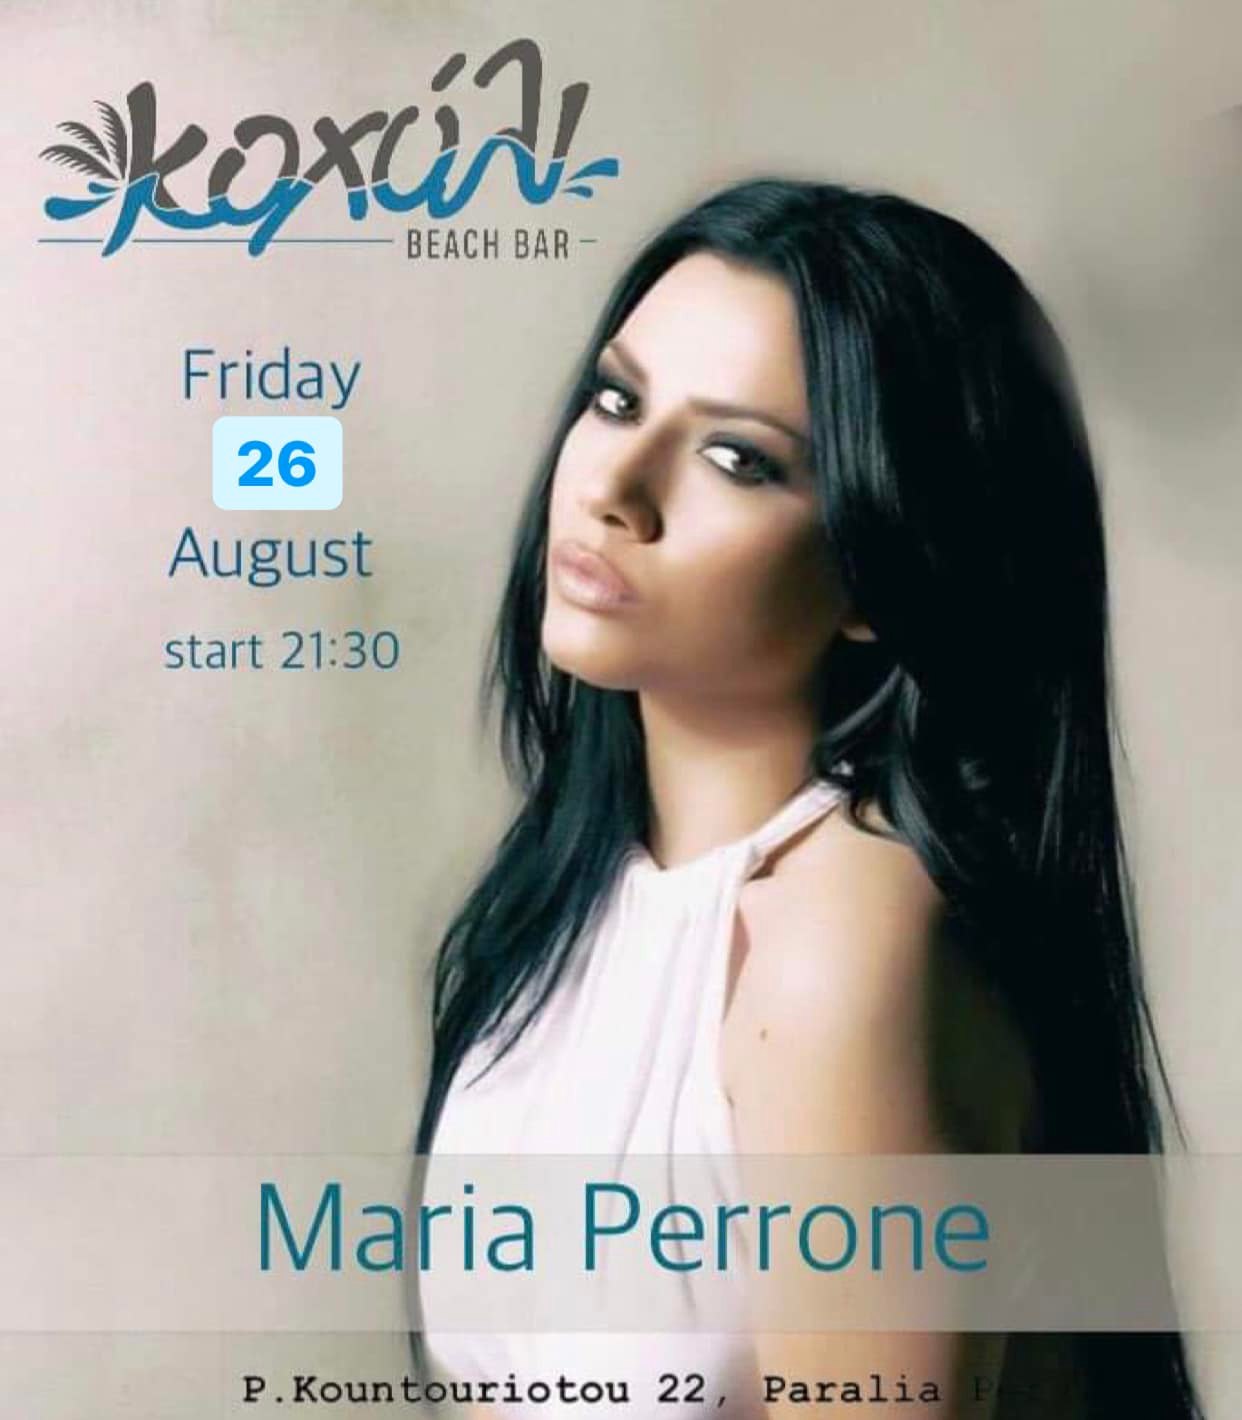 Η Μαρία Περρόνε απόψε στο “Κοχύλι”